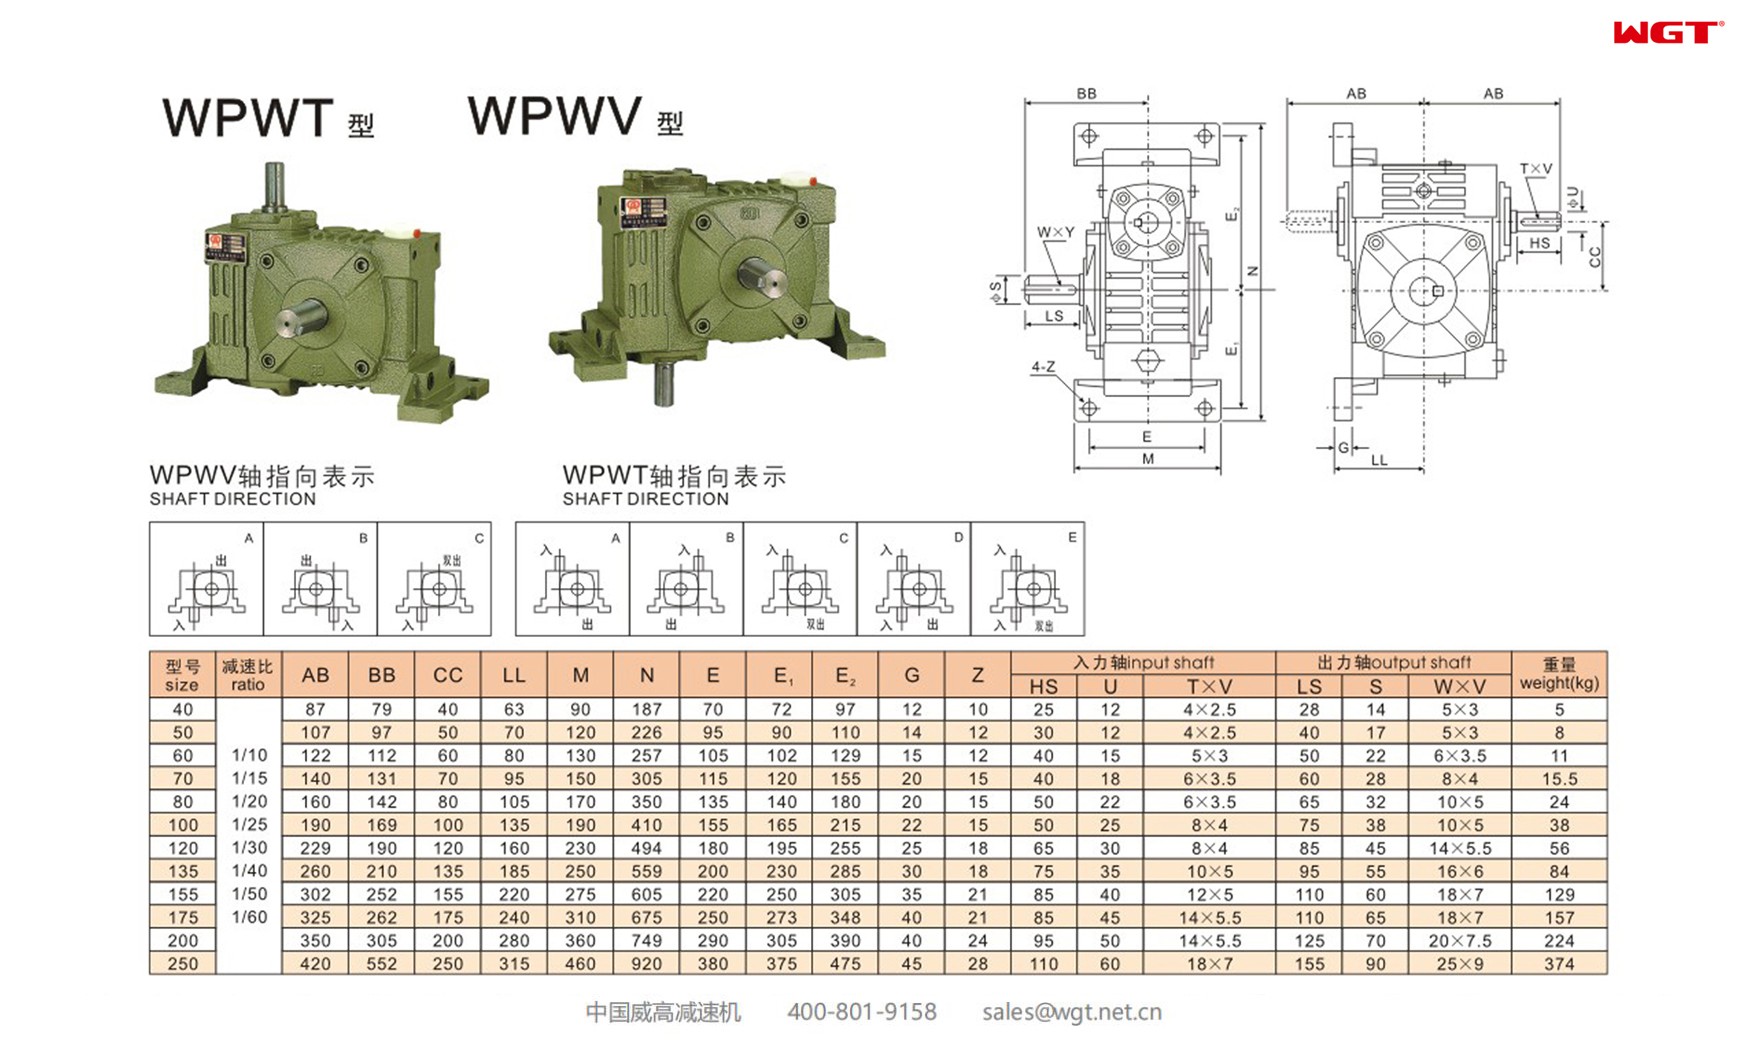 WPWT175 worm gear reducer universal speed reducer